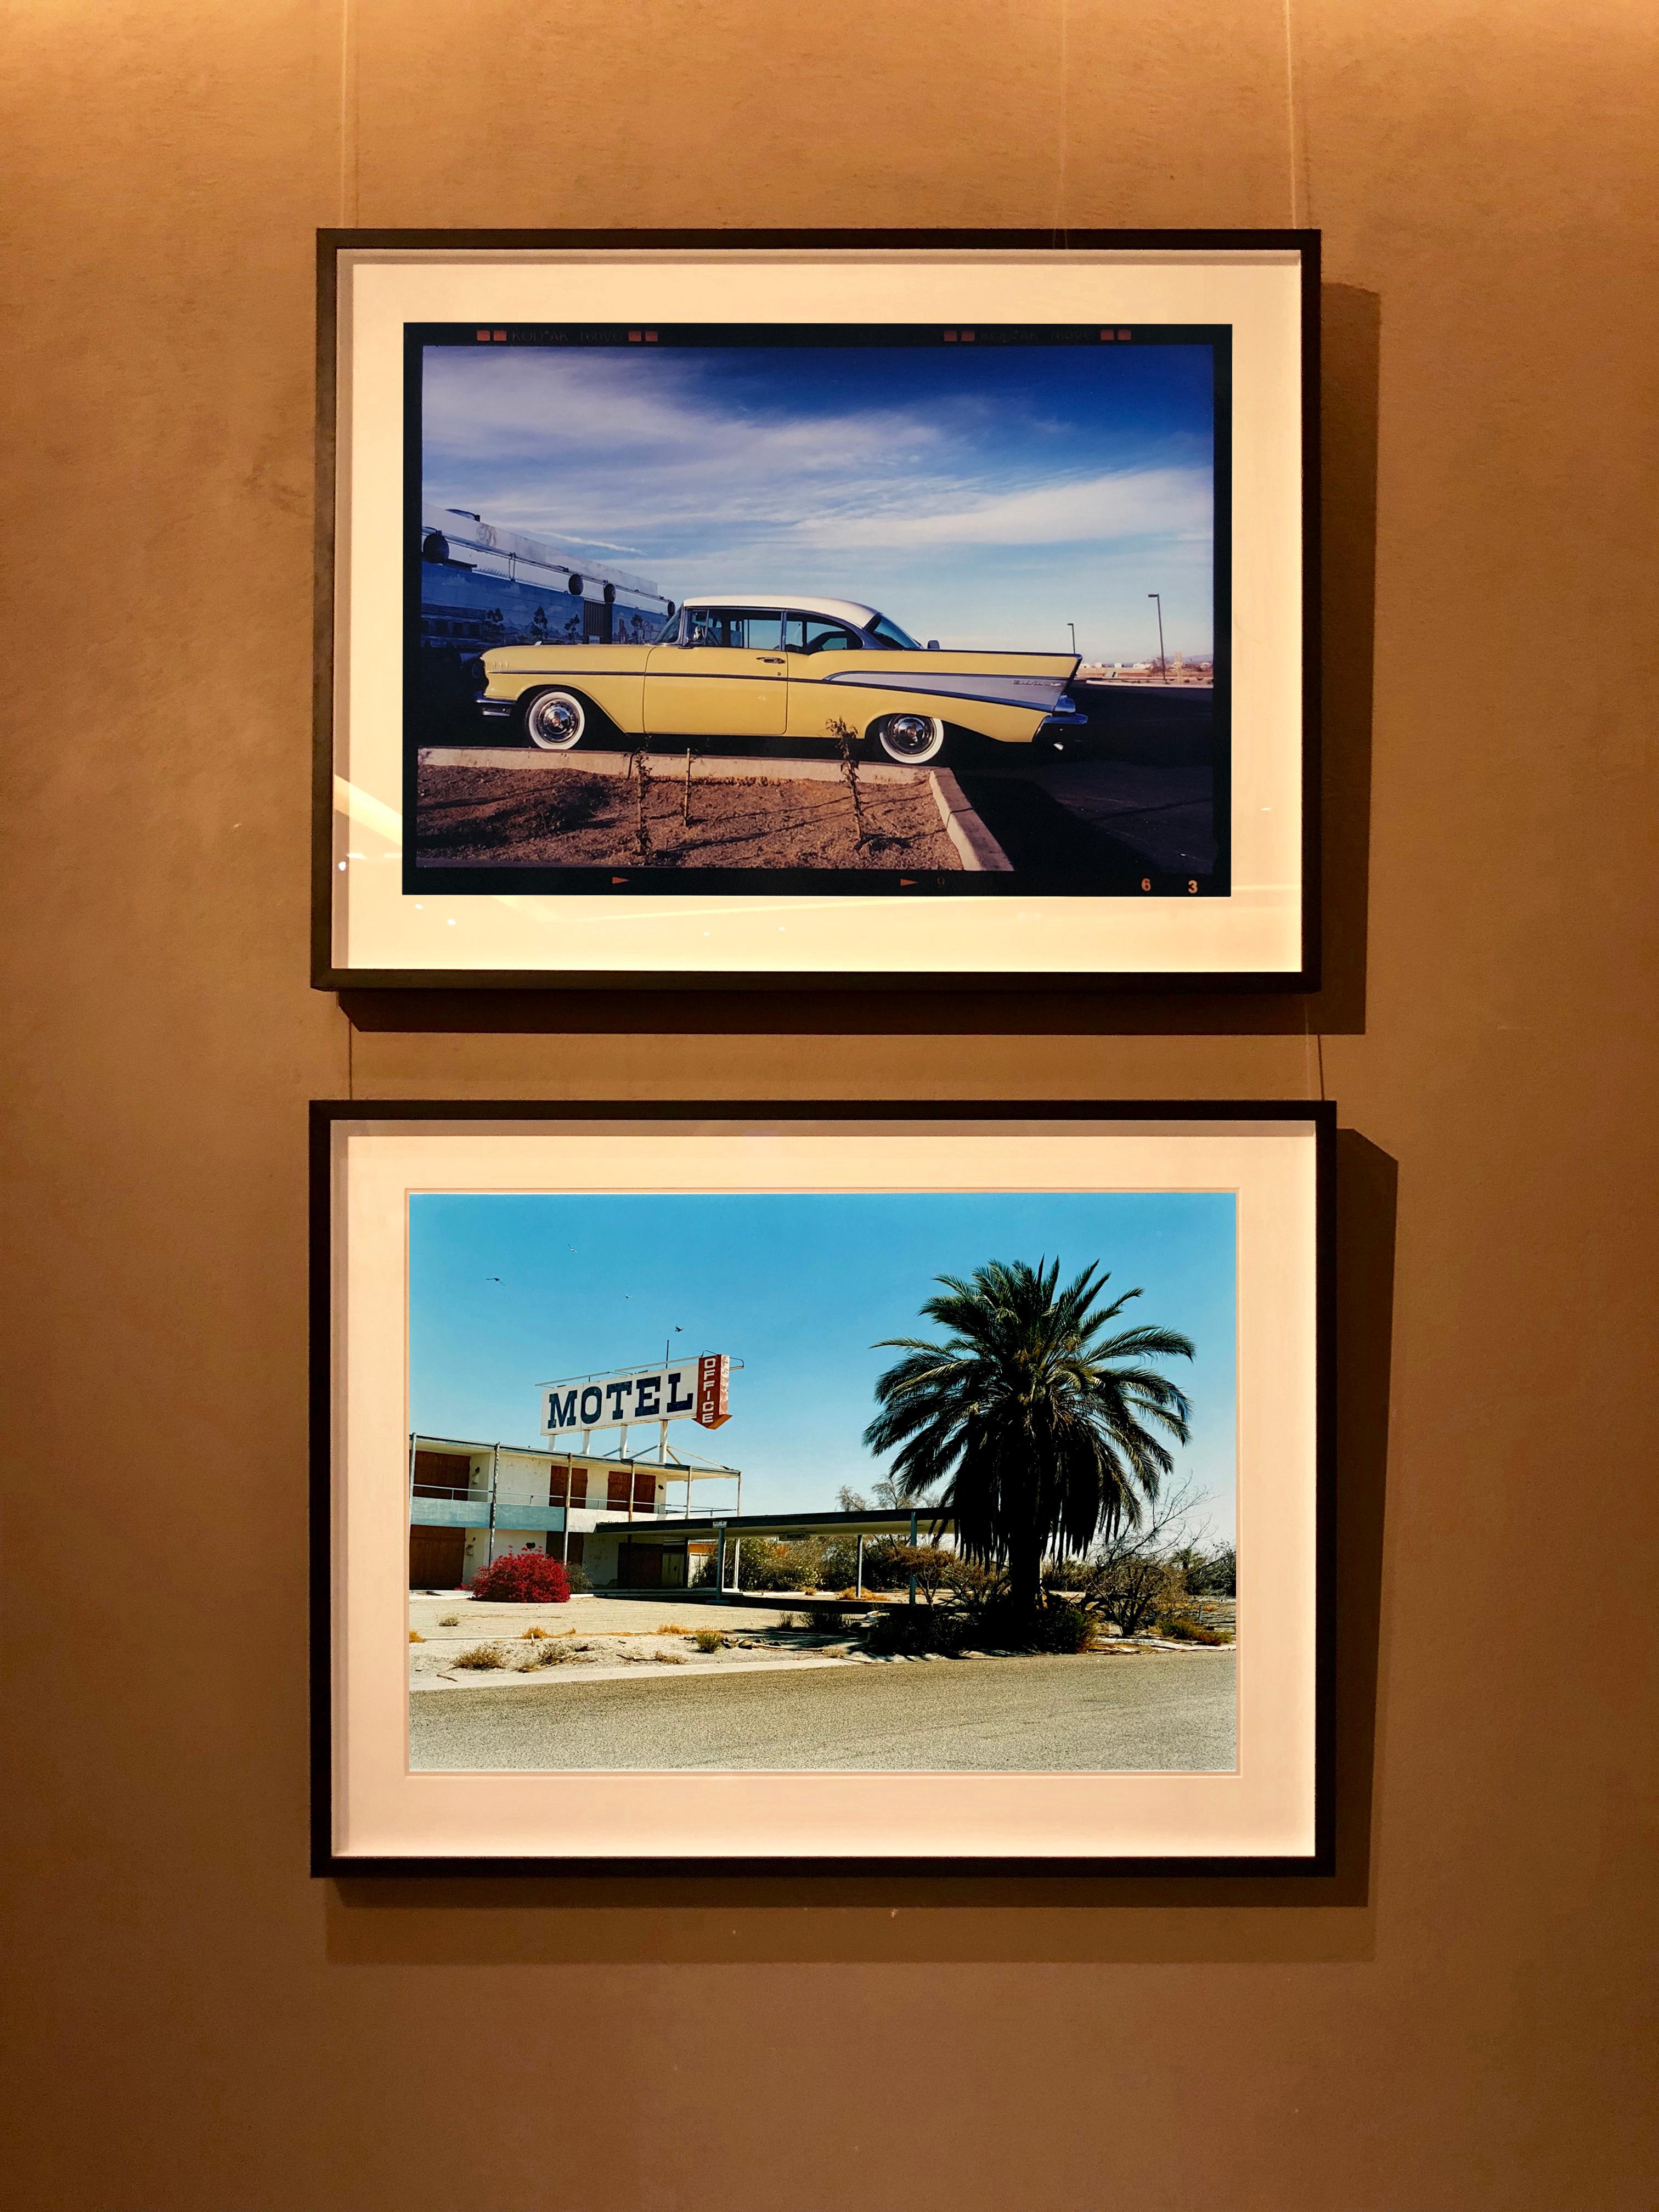 North Shore Motel, photographie de Richard Heeps prise dans la mer de Salton, en Californie. Un motel américain classique et délavé en bord de route, dont l'architecture du milieu du siècle se détache sur un ciel bleu et un palmier touffu. 

Cette